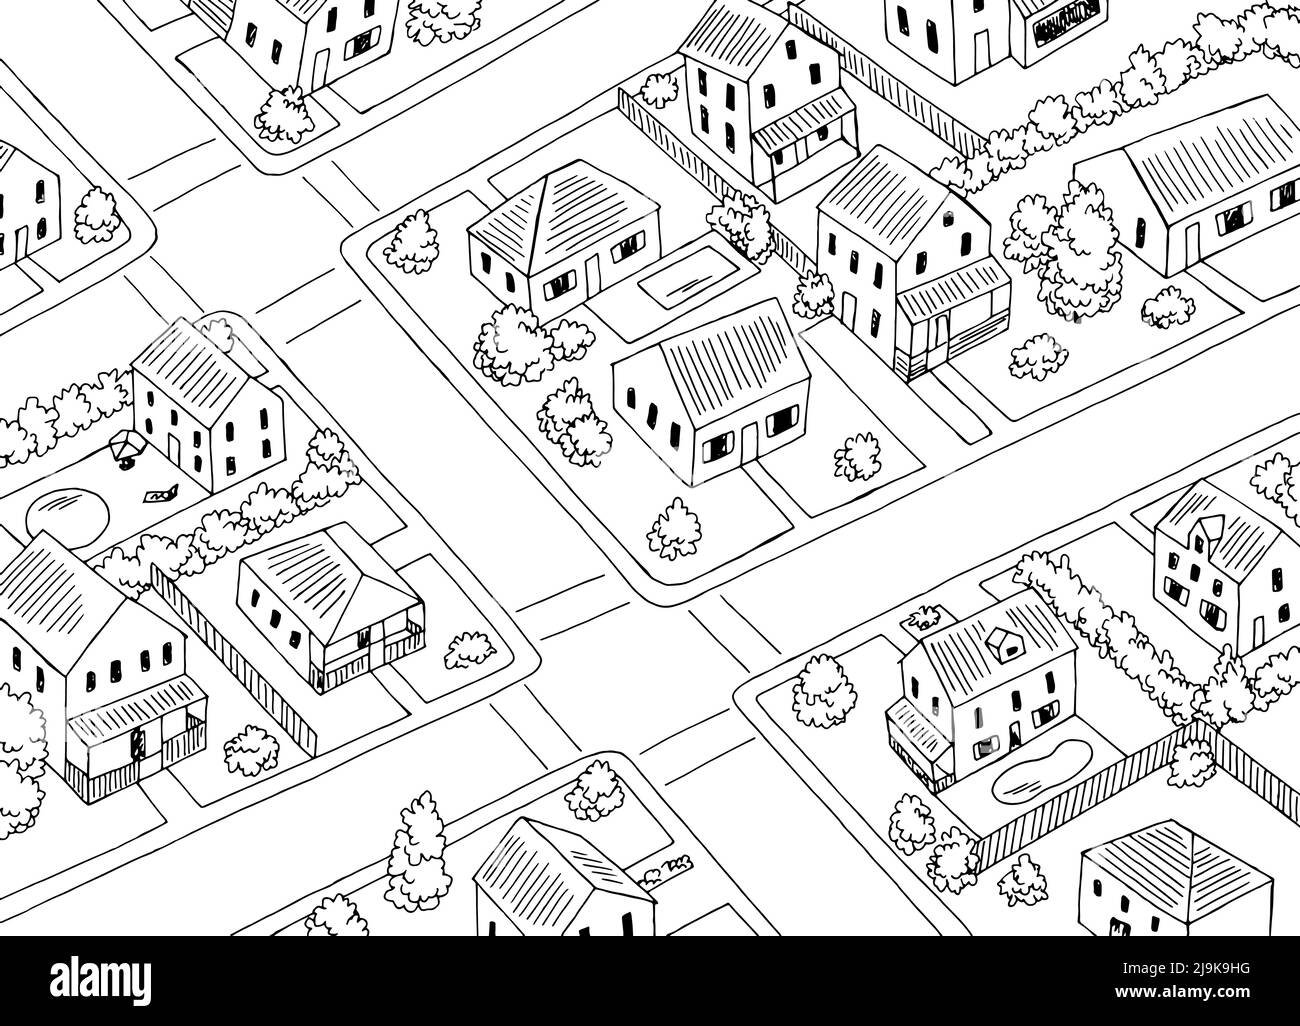 Wohnviertel Draufsicht aus der Luft Kreuzung Straße Grafik schwarz weiß Skizze Illustration Vektor Stock Vektor